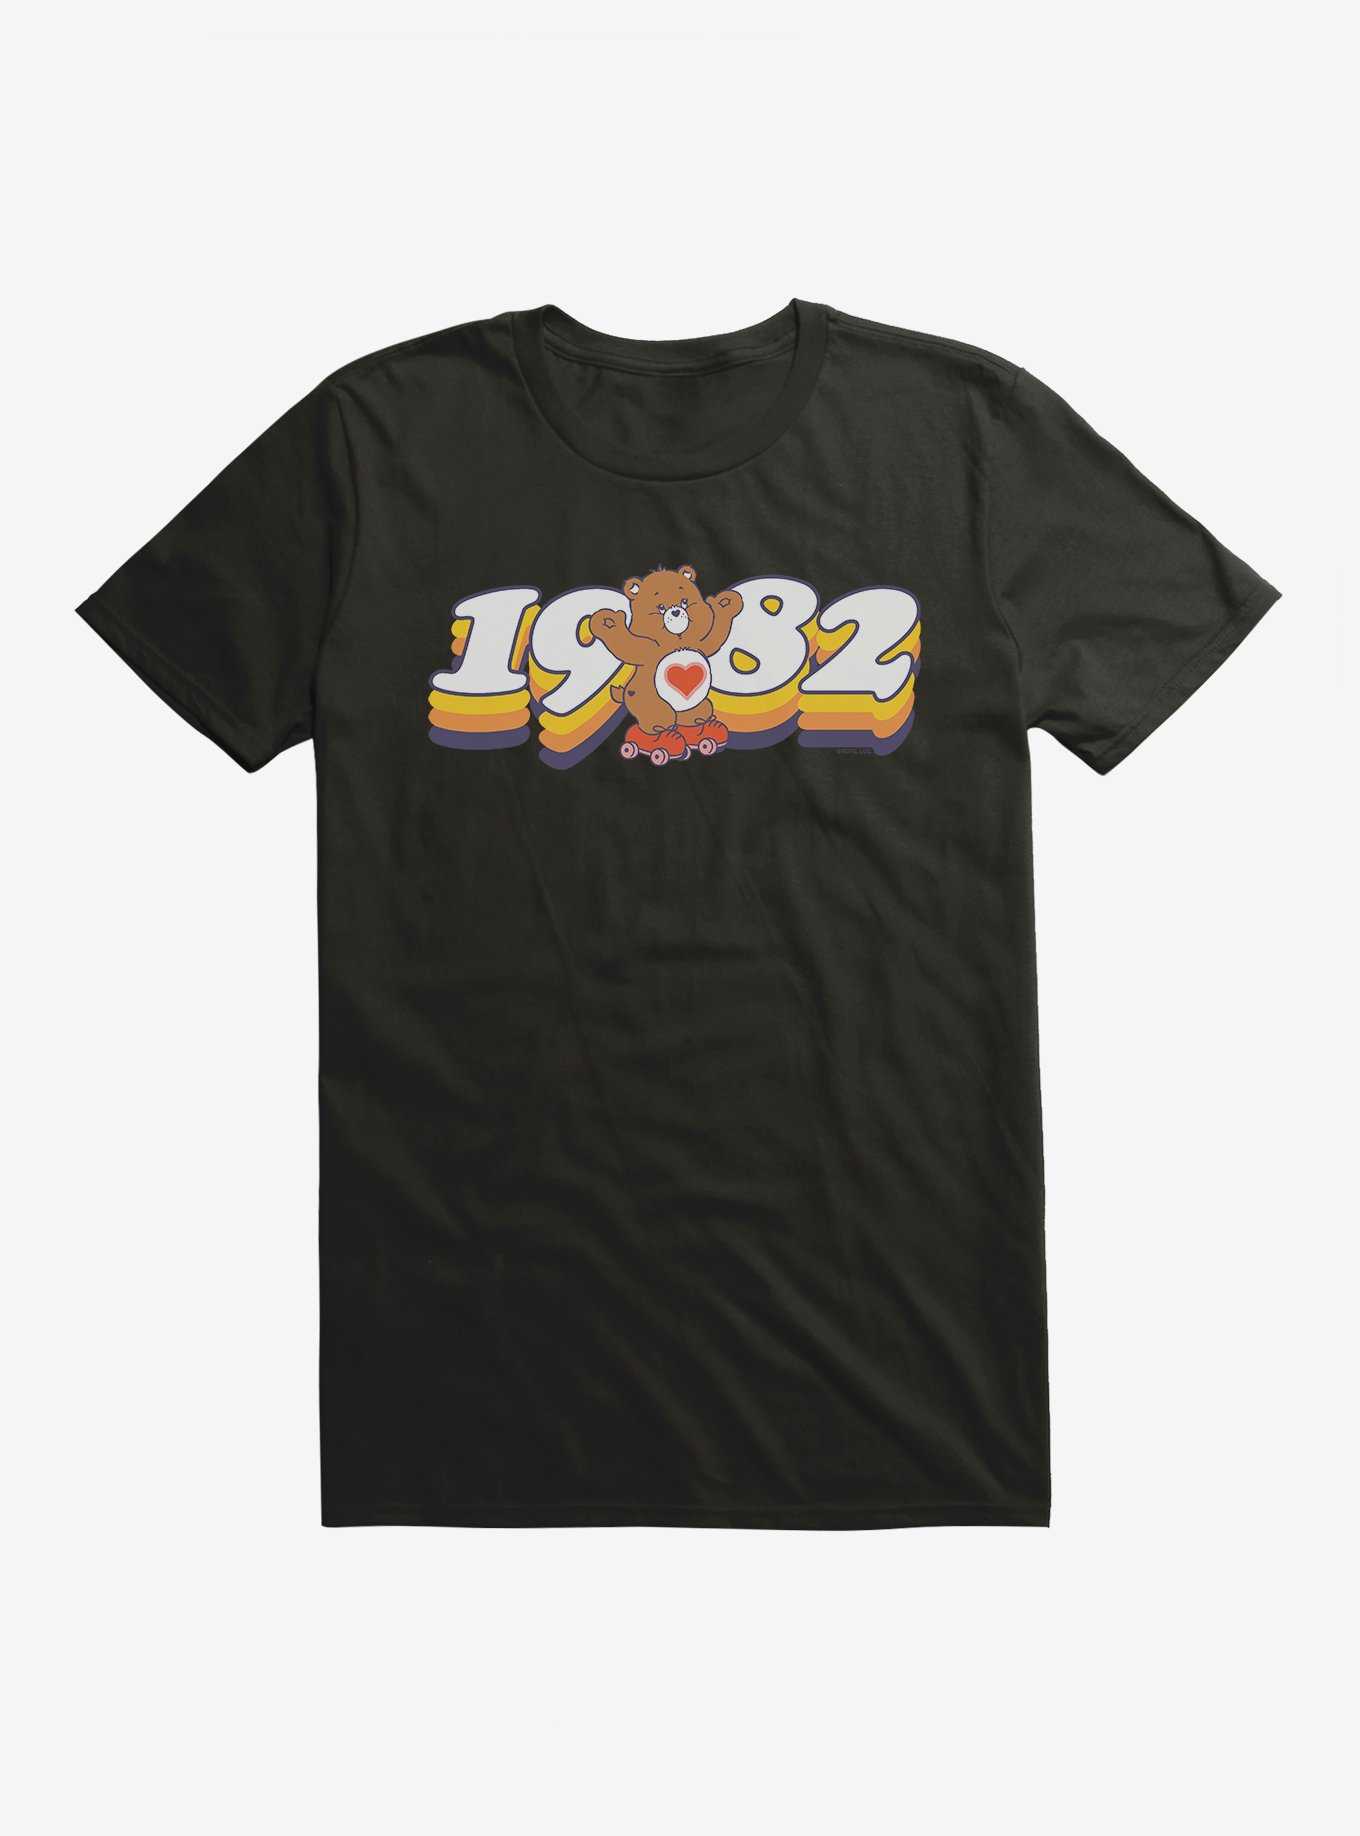 Care Bears Skating Since 1982 T-Shirt, , hi-res